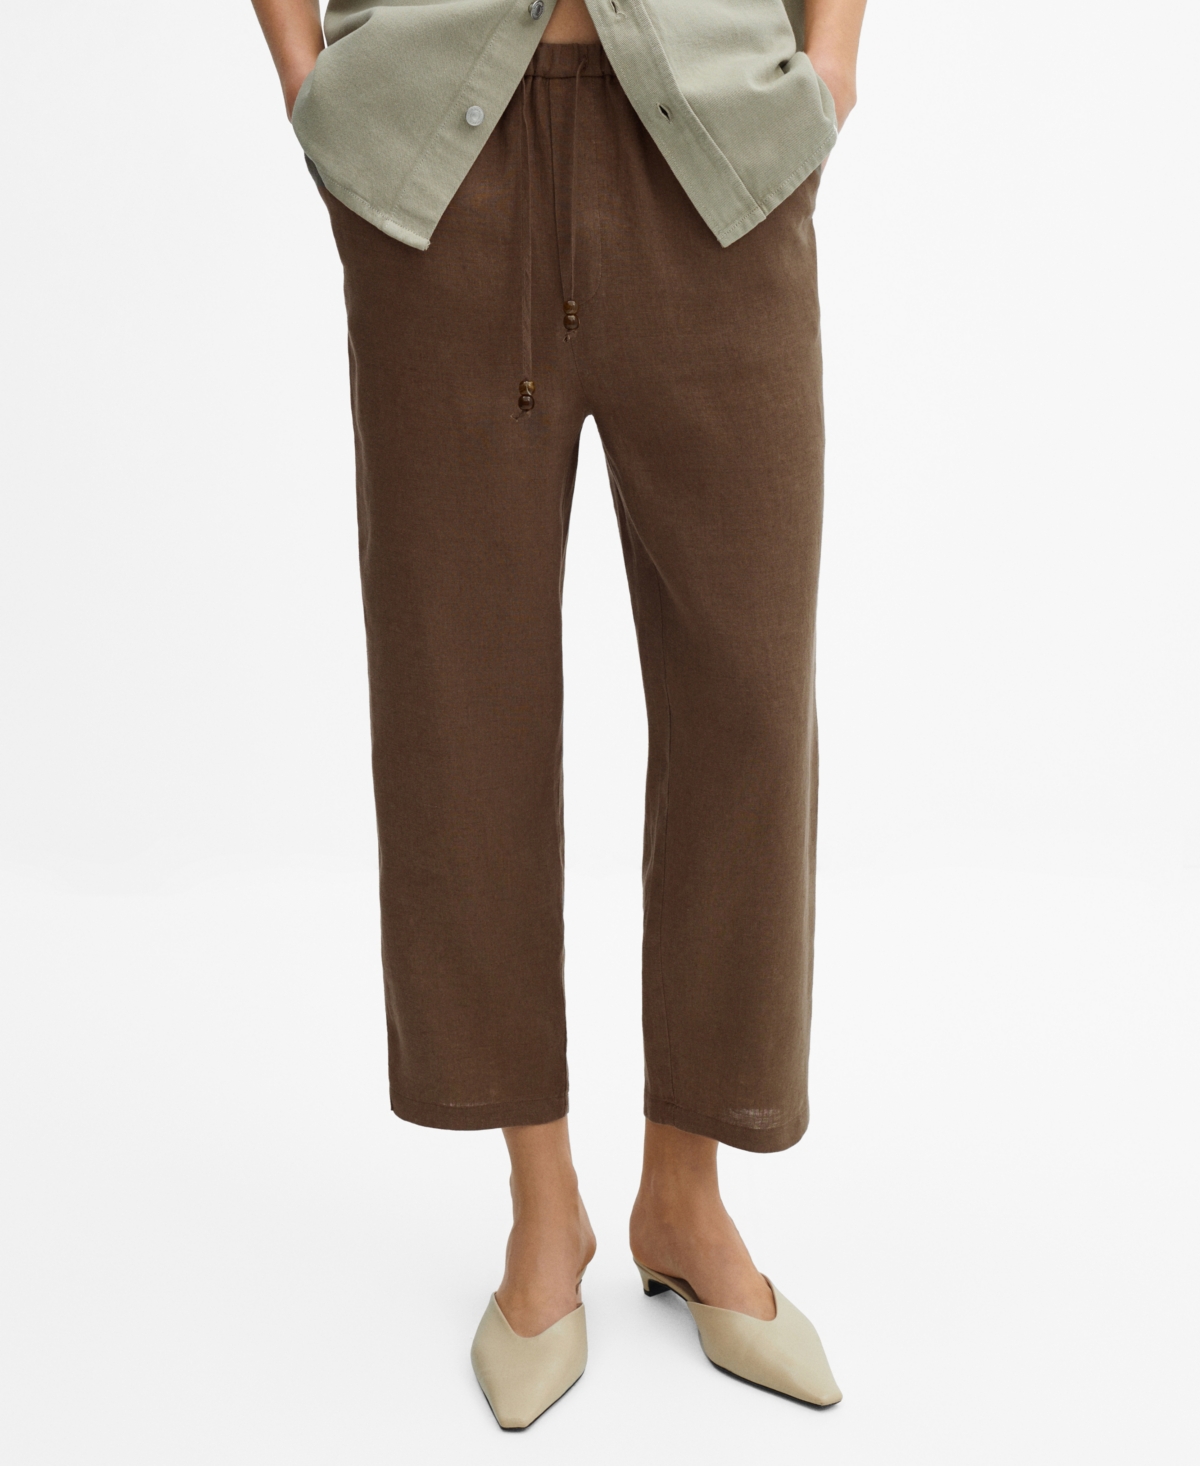 Mango Women's 100% Linen Pants In Medium Bro